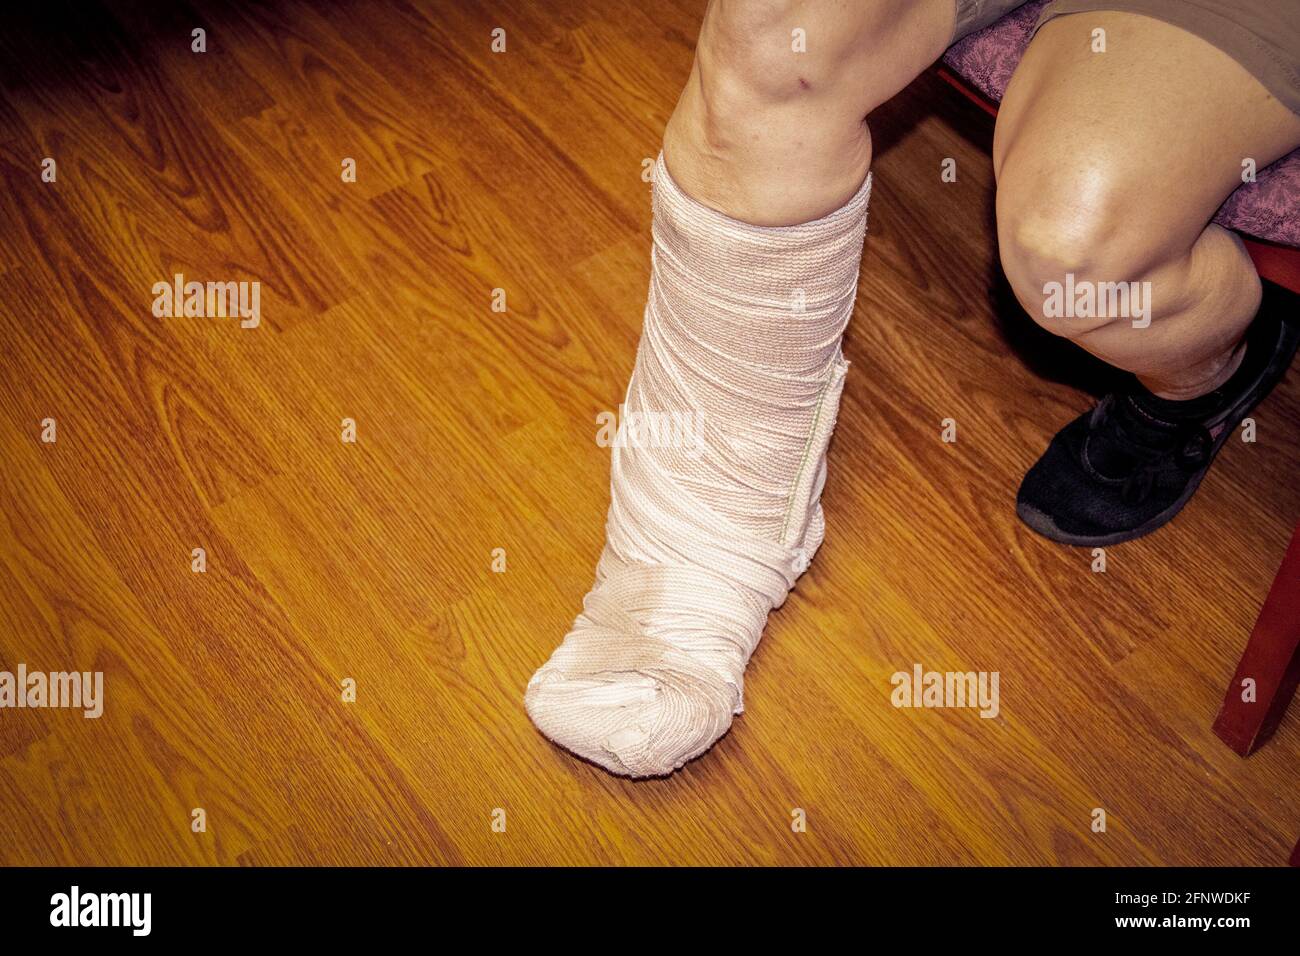 Piede e gamba di donna corto bendato in pantaloncini contro il pavimento di legno come lei si siede su panca o sedia. Foto Stock